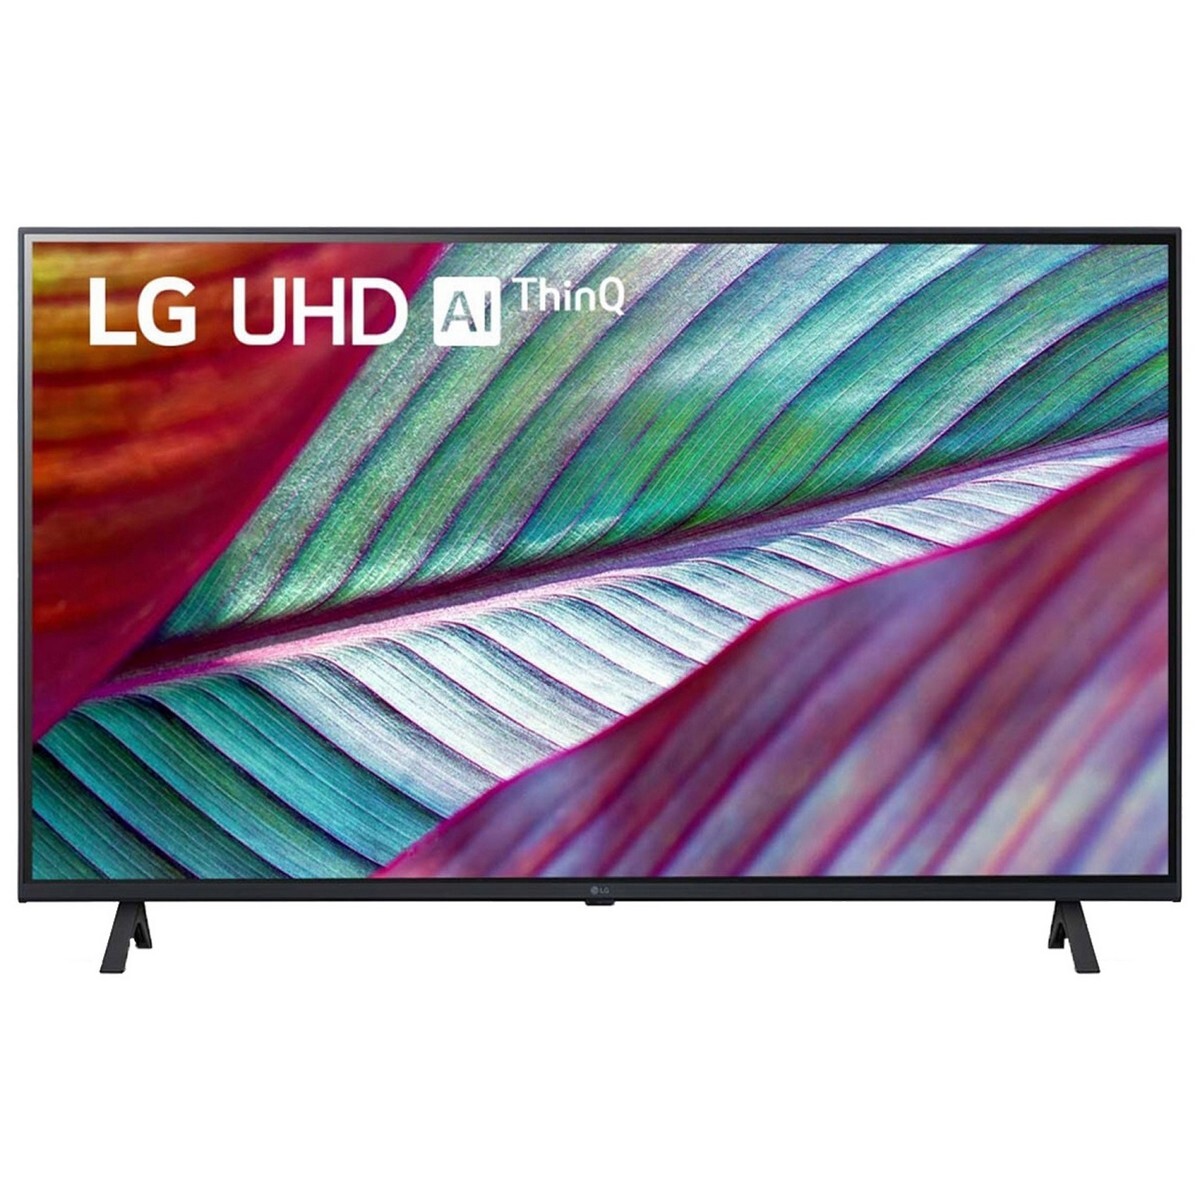 LG 4K Ultra HD WebOS Smart TV 43UR7550PSC 43"